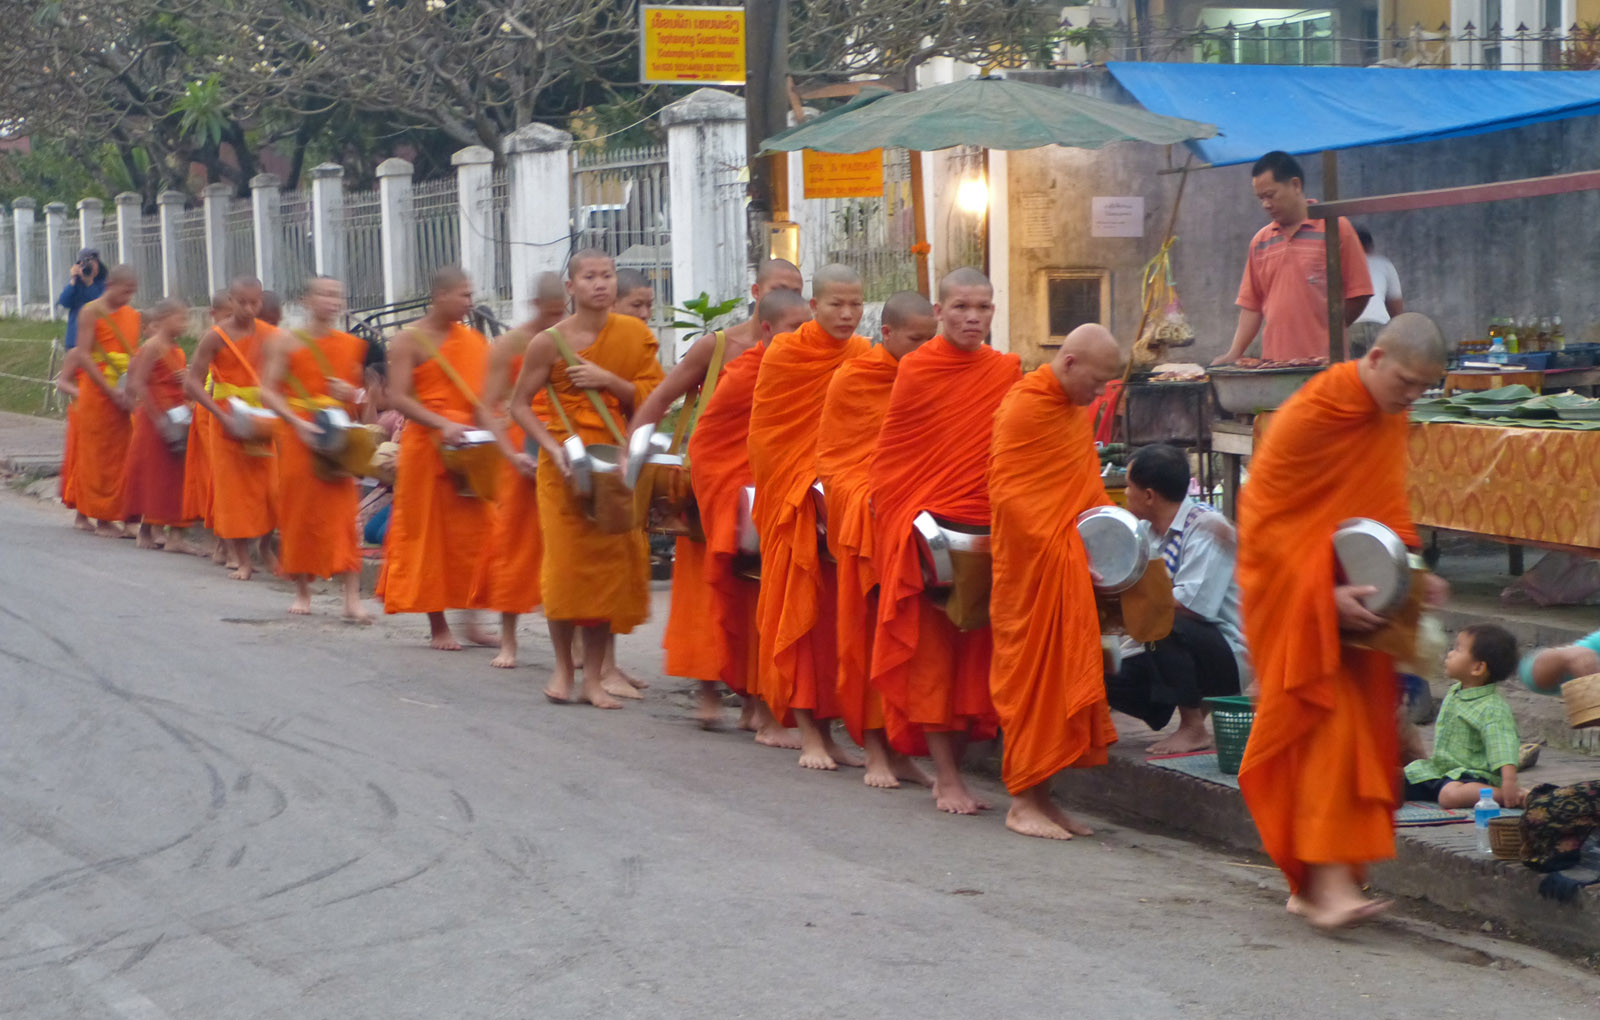 Monks receiving food, Luang Prabang, Laos